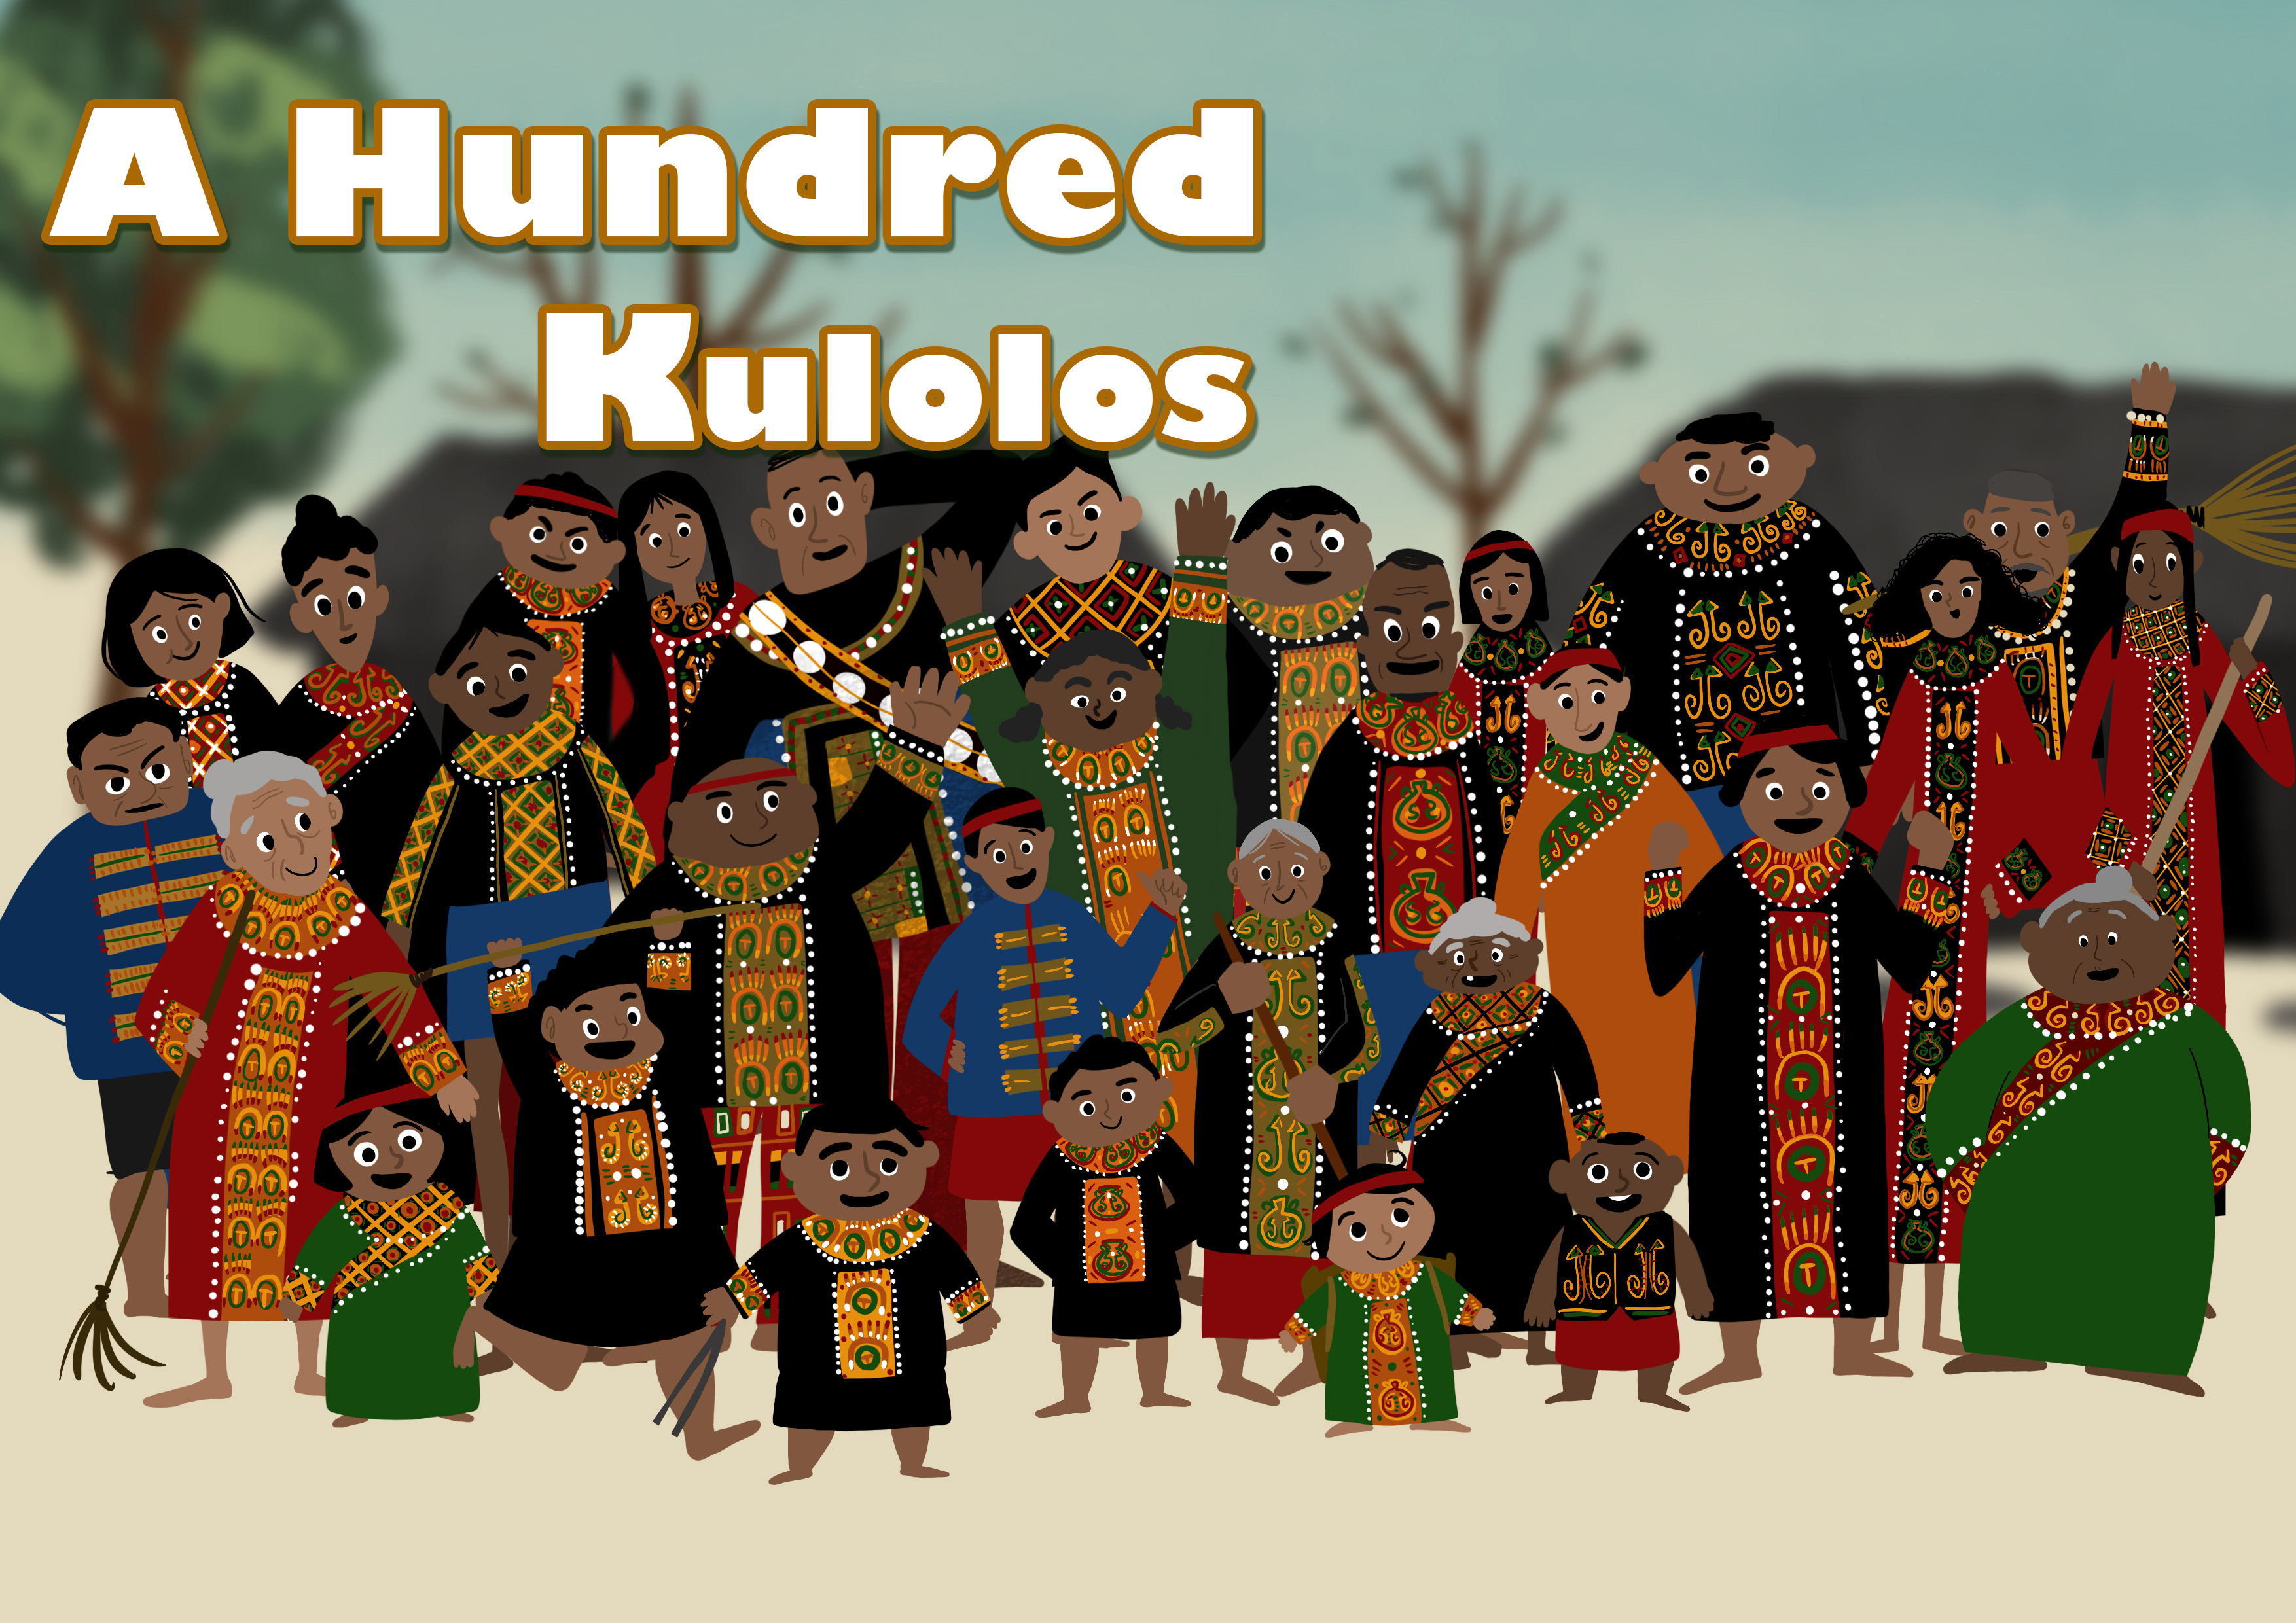 A Hundred Kulolos